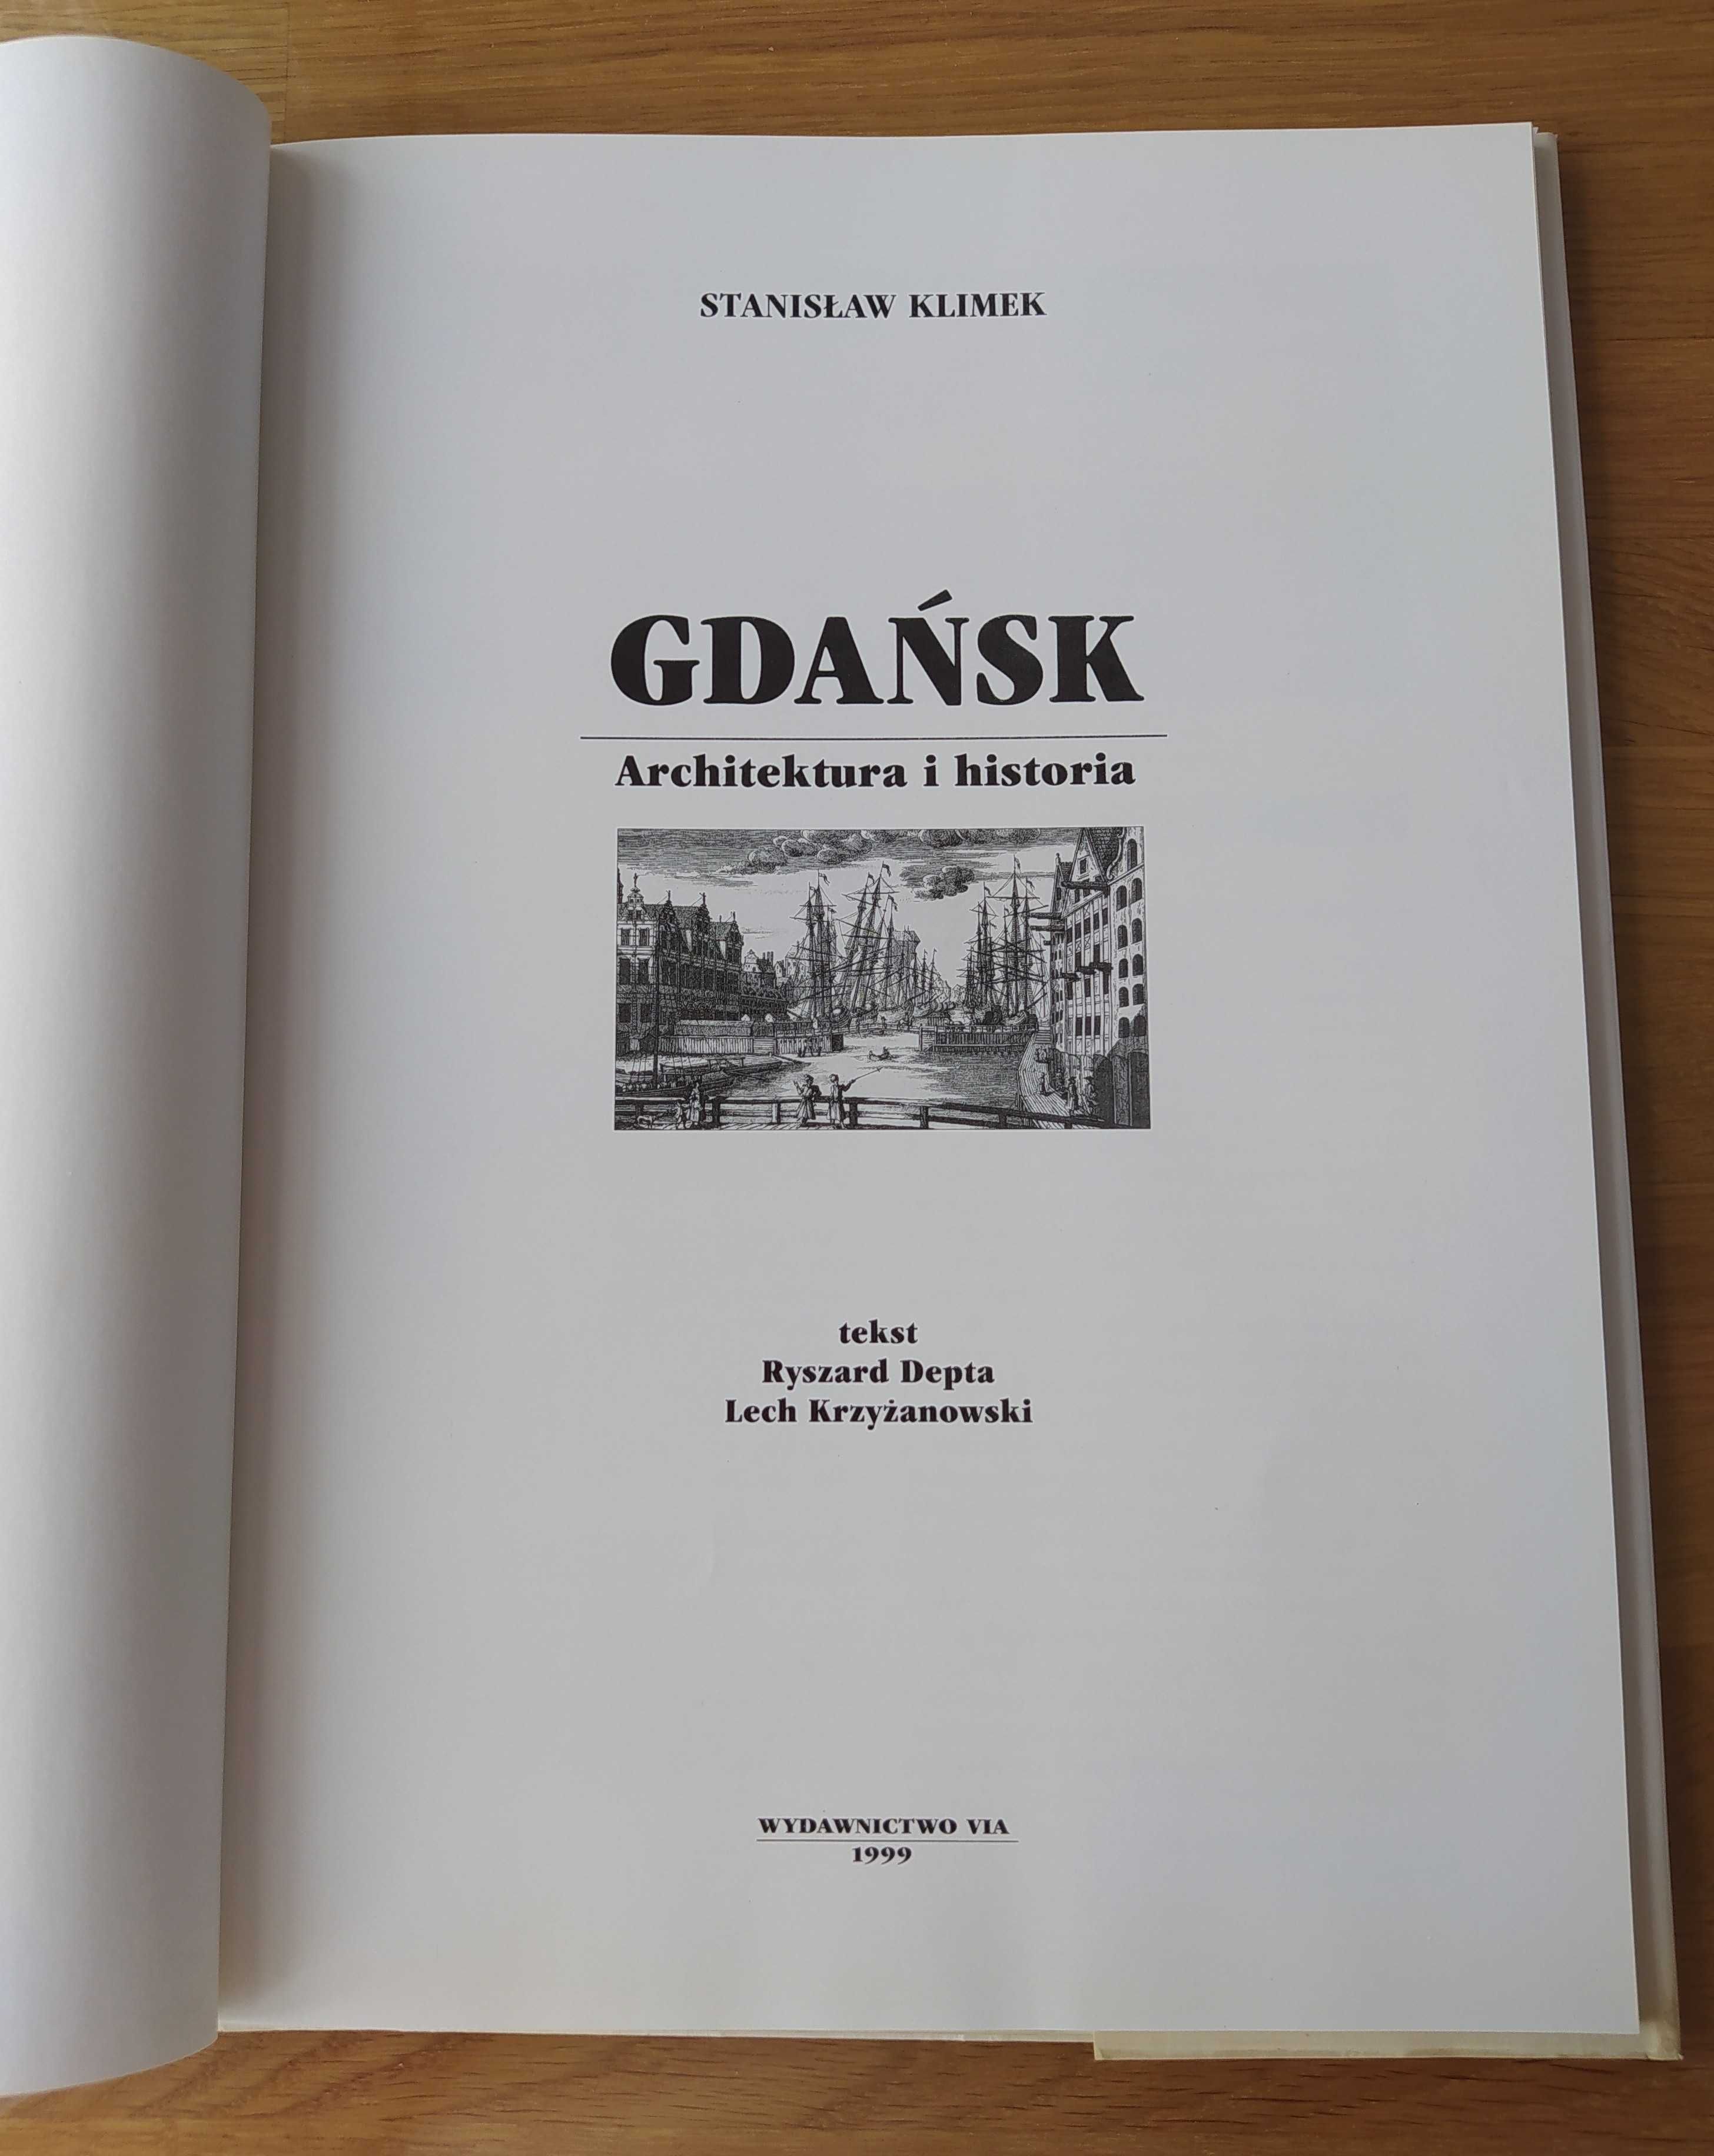 GDAŃSK Architektura i historia – Stanisław Klimek